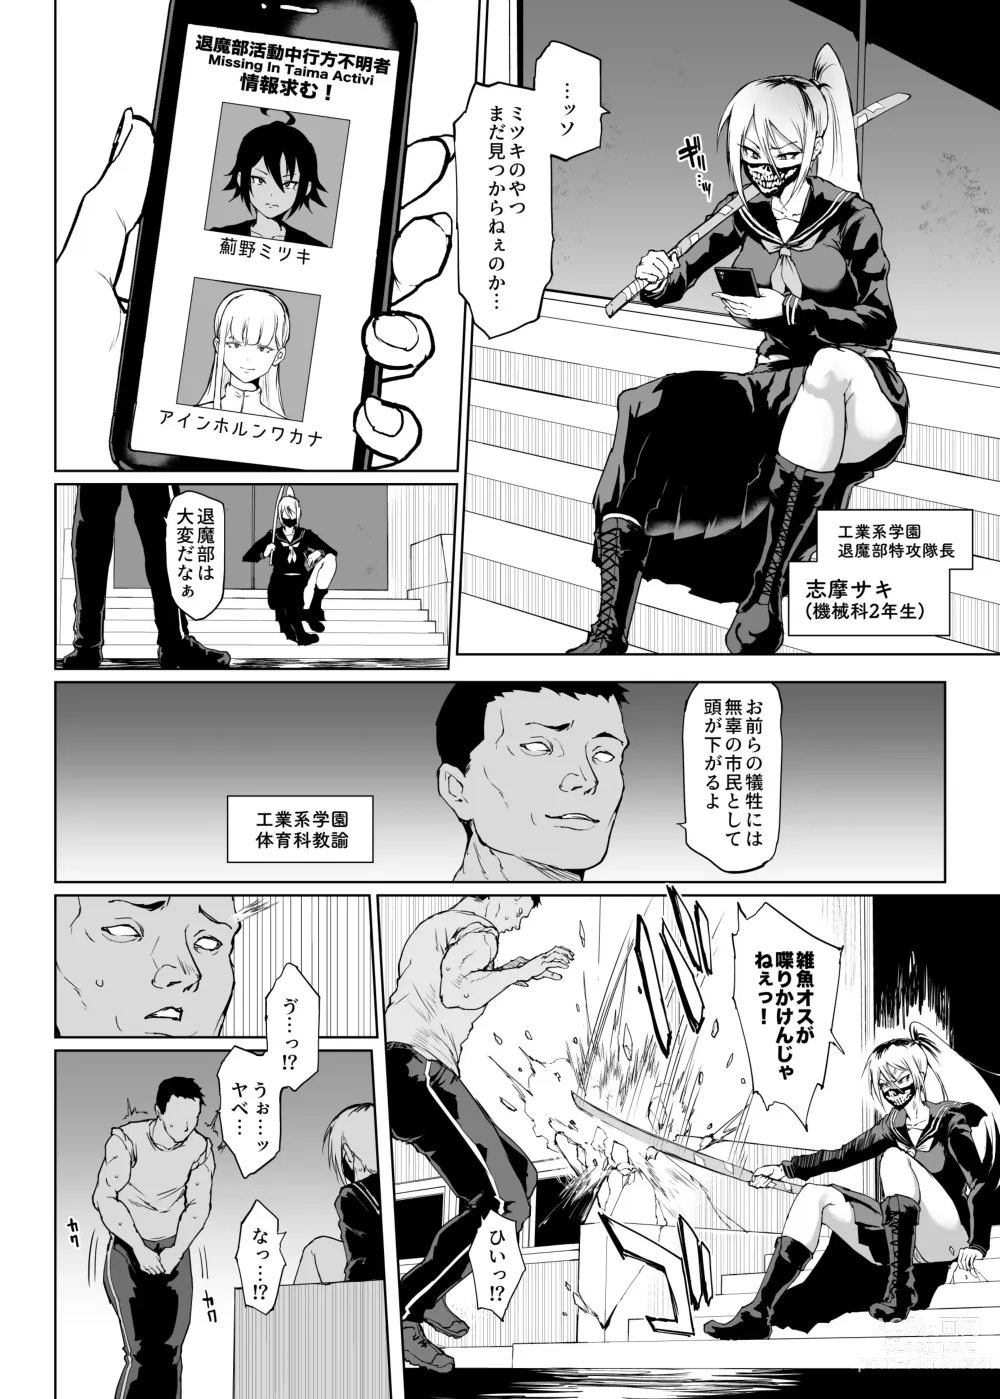 Page 2 of doujinshi Taimabu S3 Noroi no Kaiga Hen 2